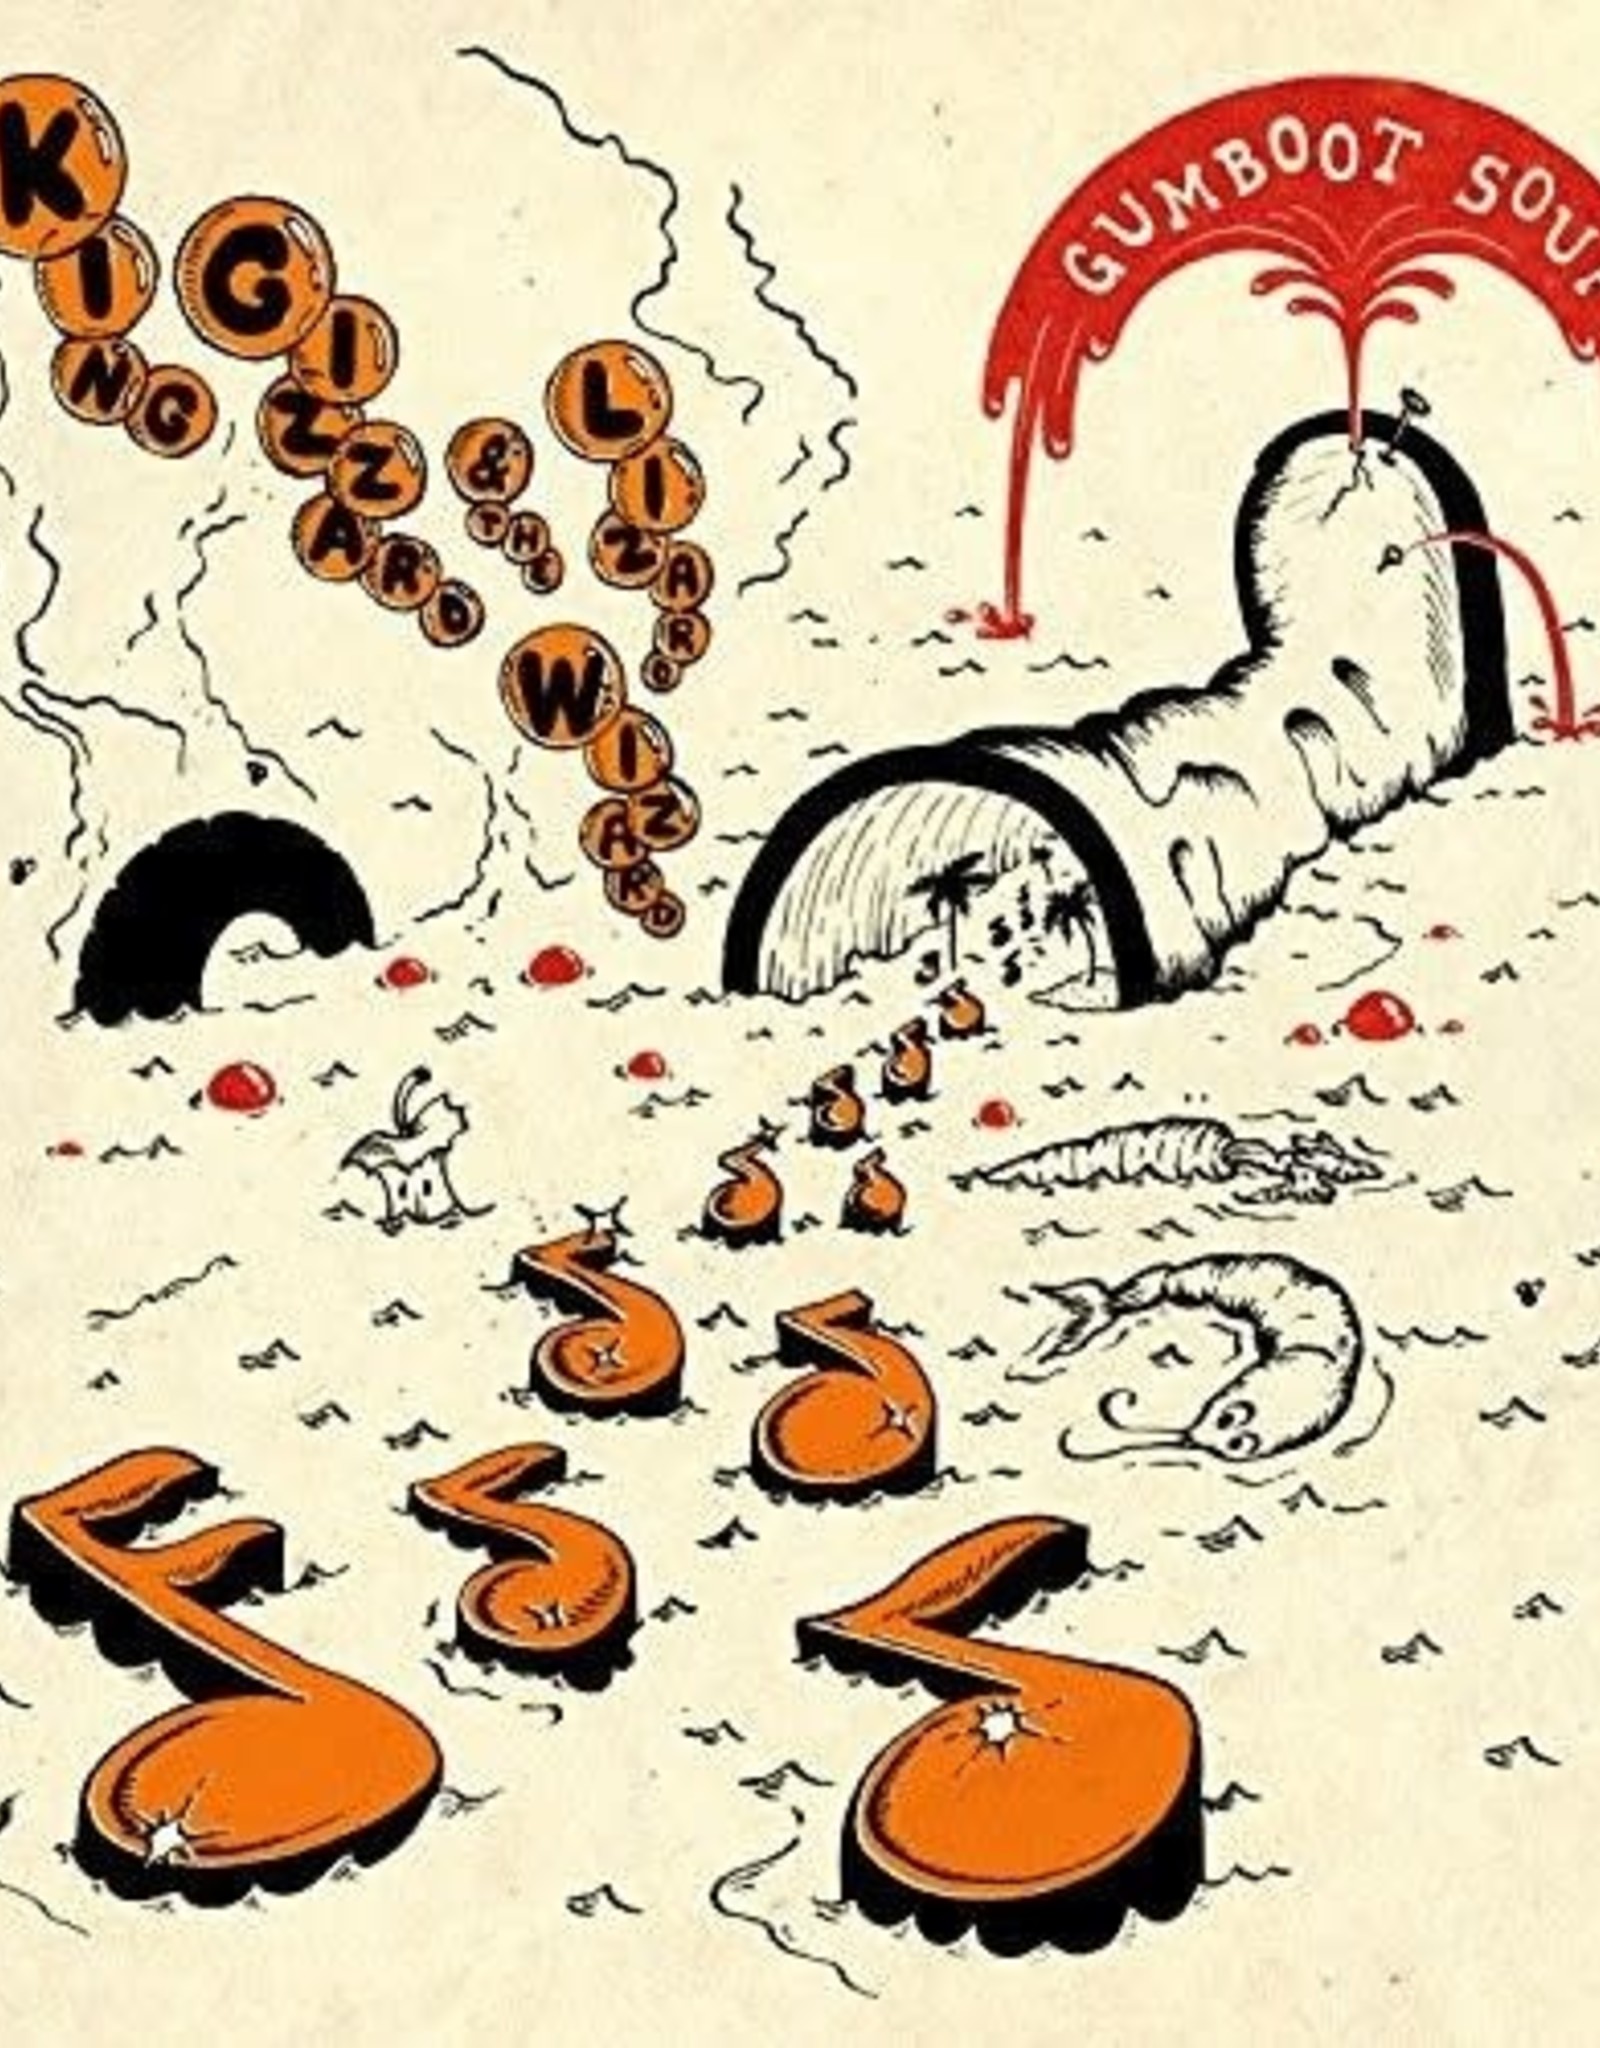 King Gizzard and the Lizard Wizard - Gumboot Soup  (Orange Splatter Vinyl)